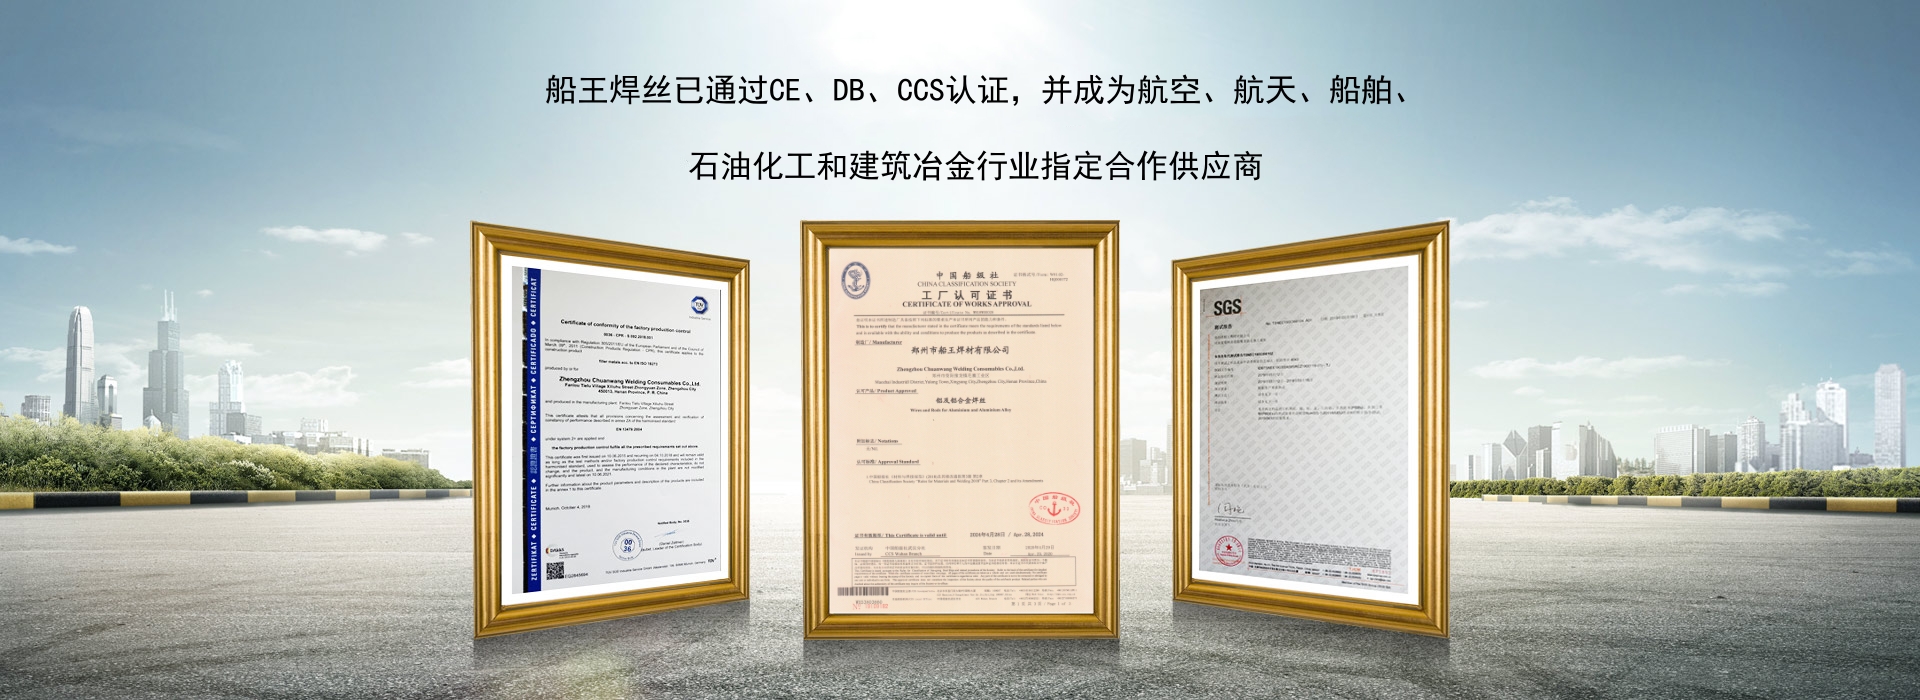 船王焊材所有产品已通过CE、DB、SGS认证